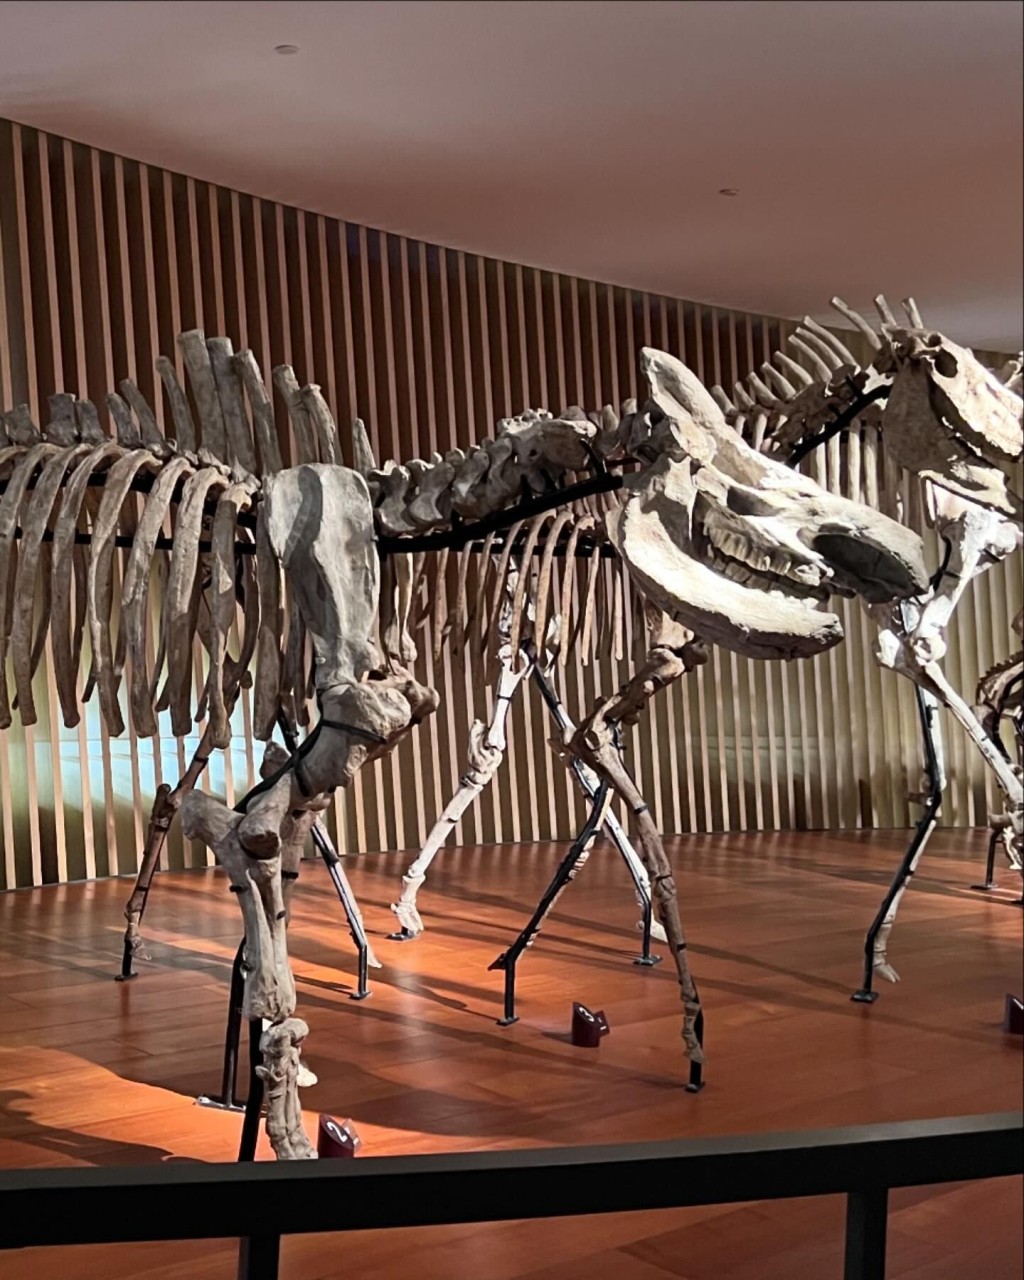 上海自然博物馆有很多恐龙模型和化石供观赏。